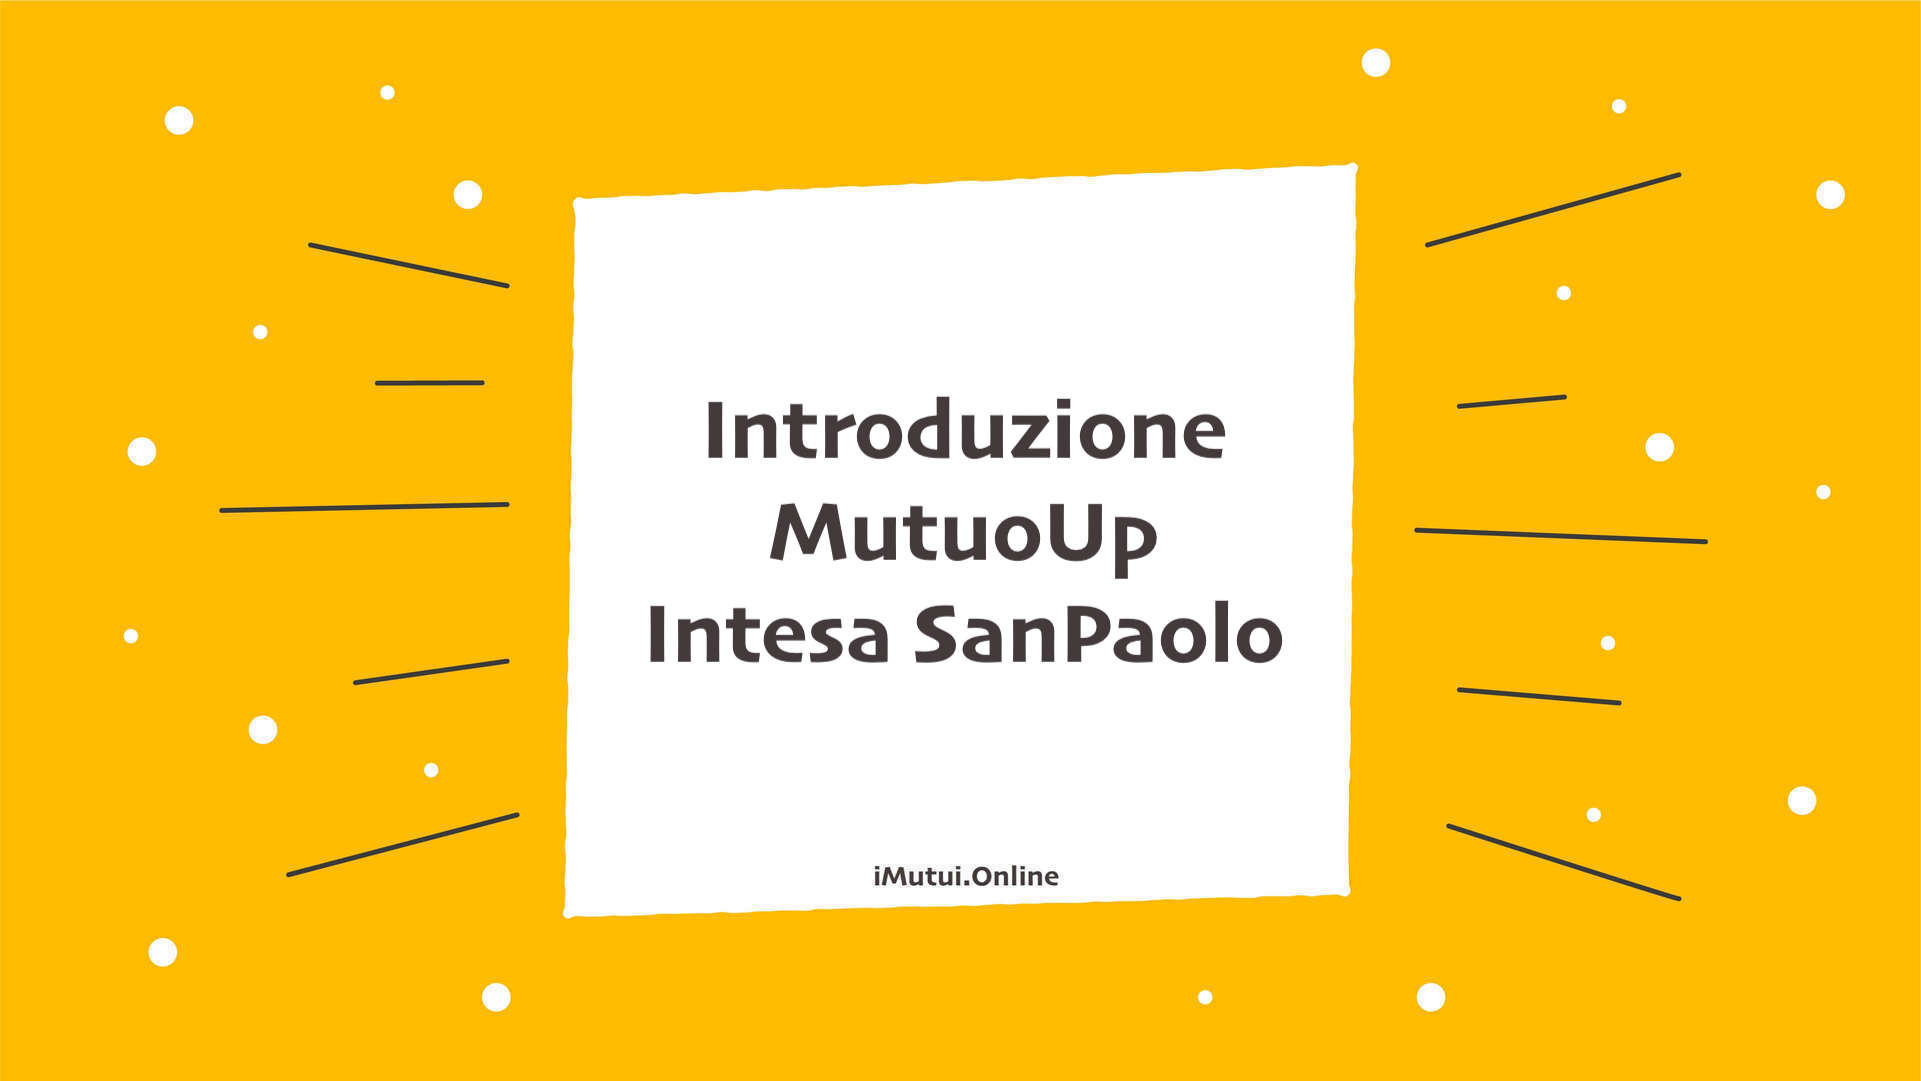 Introduzione MutuoUp Intesa SanPaolo